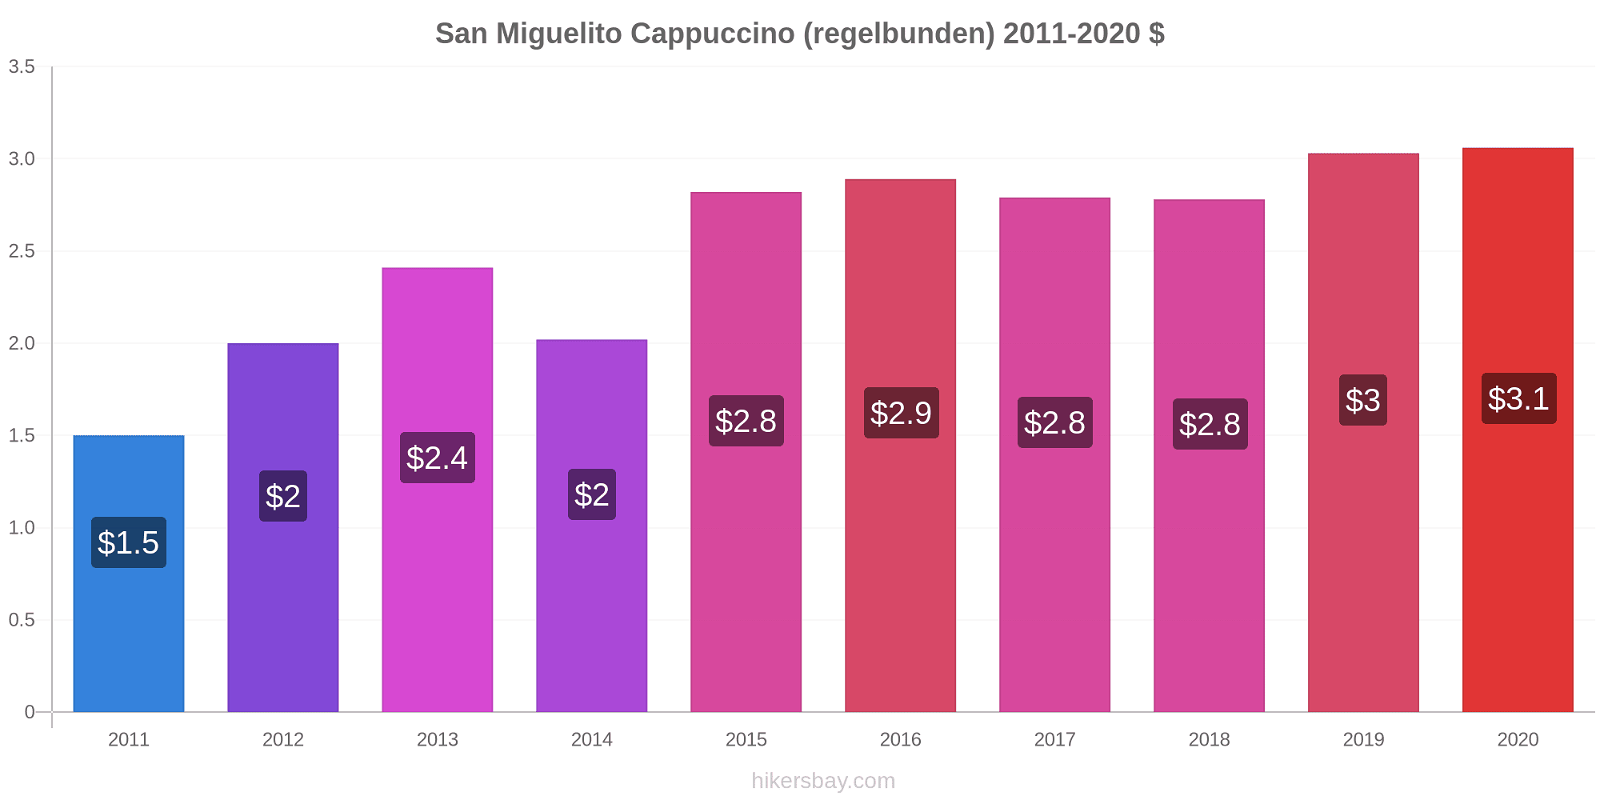 San Miguelito prisförändringar Cappuccino (regelbunden) hikersbay.com